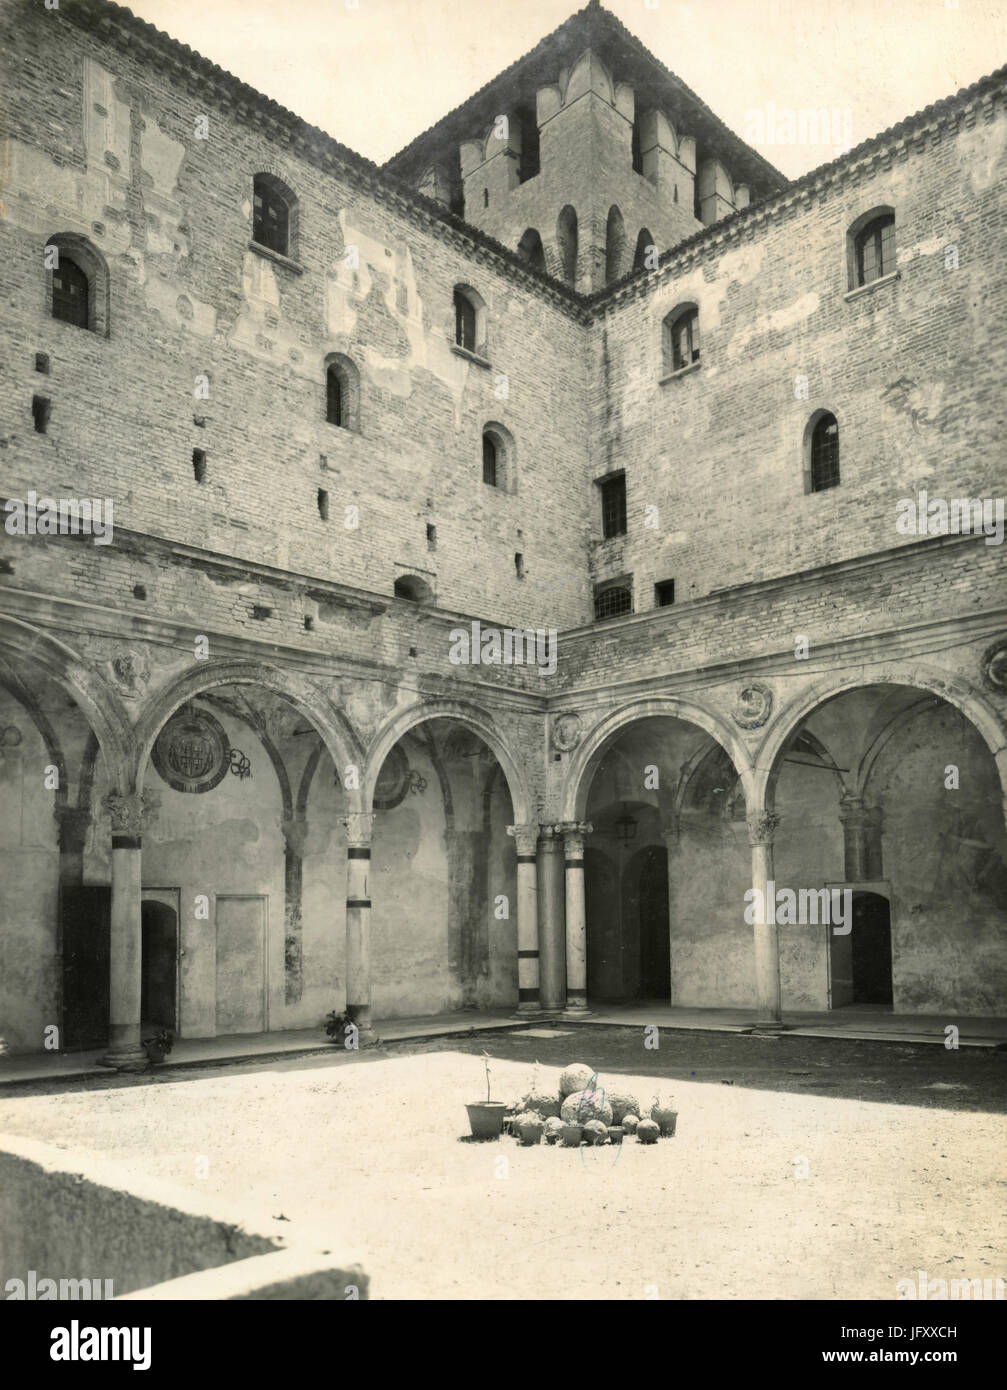 Portique dans la cour du château de Saint George, Palais Ducal, Mantova, Italie Banque D'Images